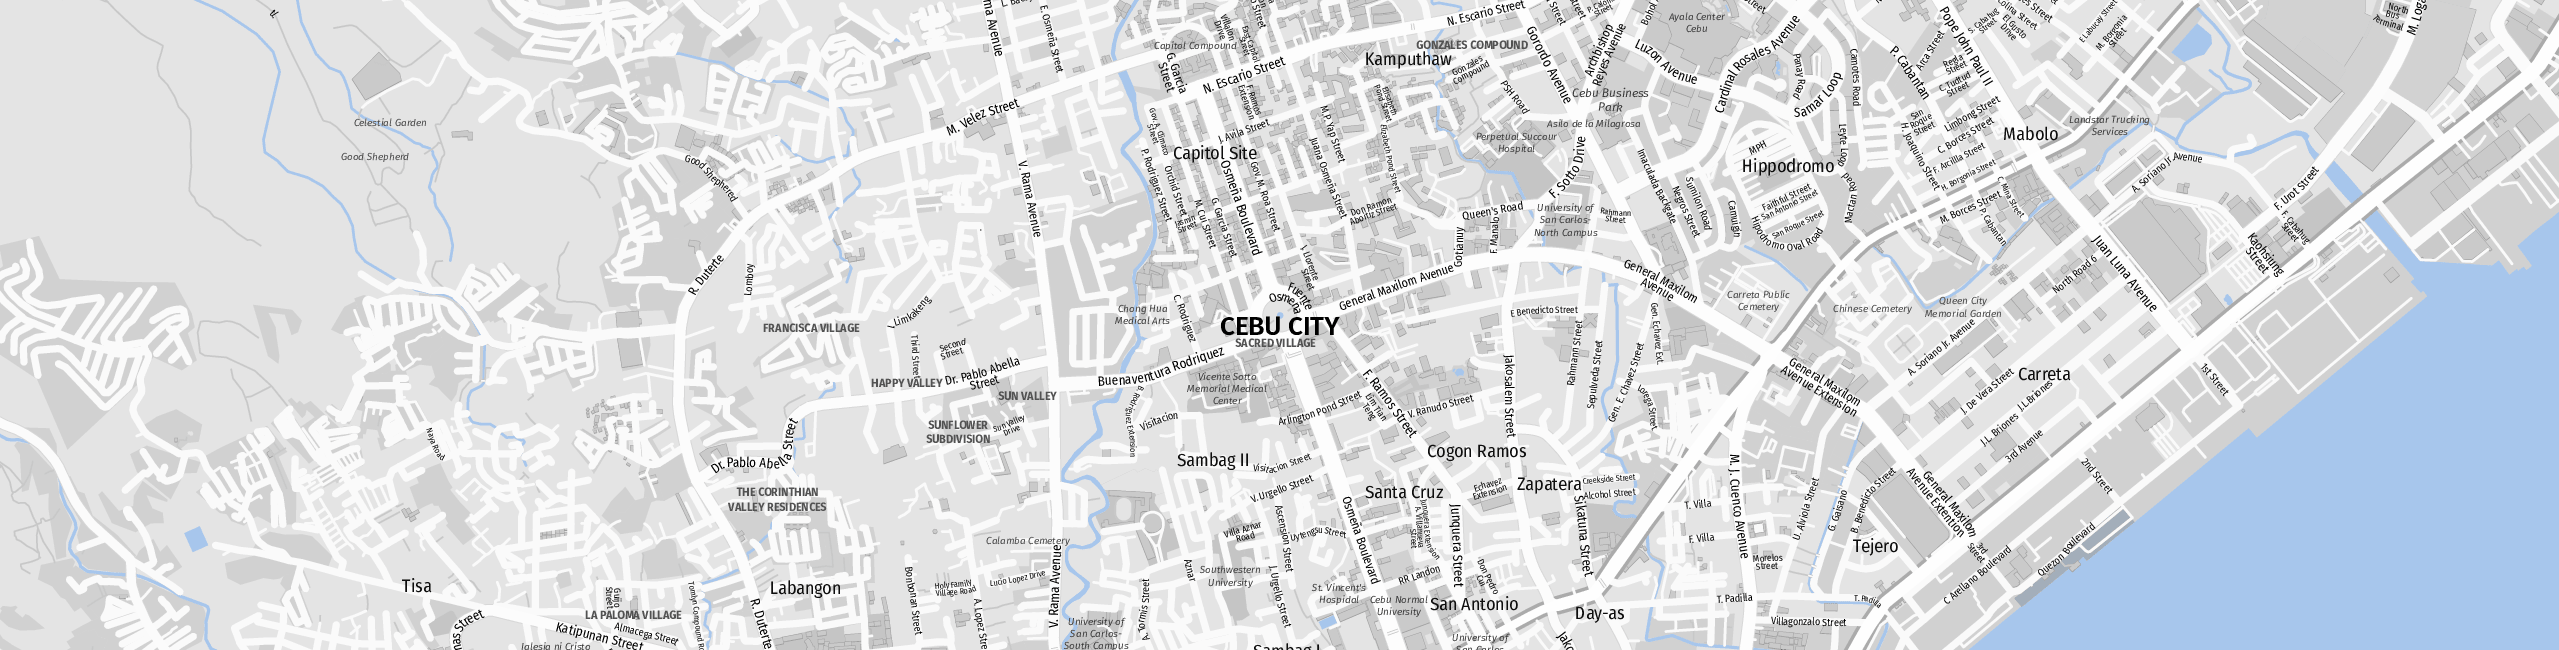 Stadtplan Cebu City zum Downloaden.